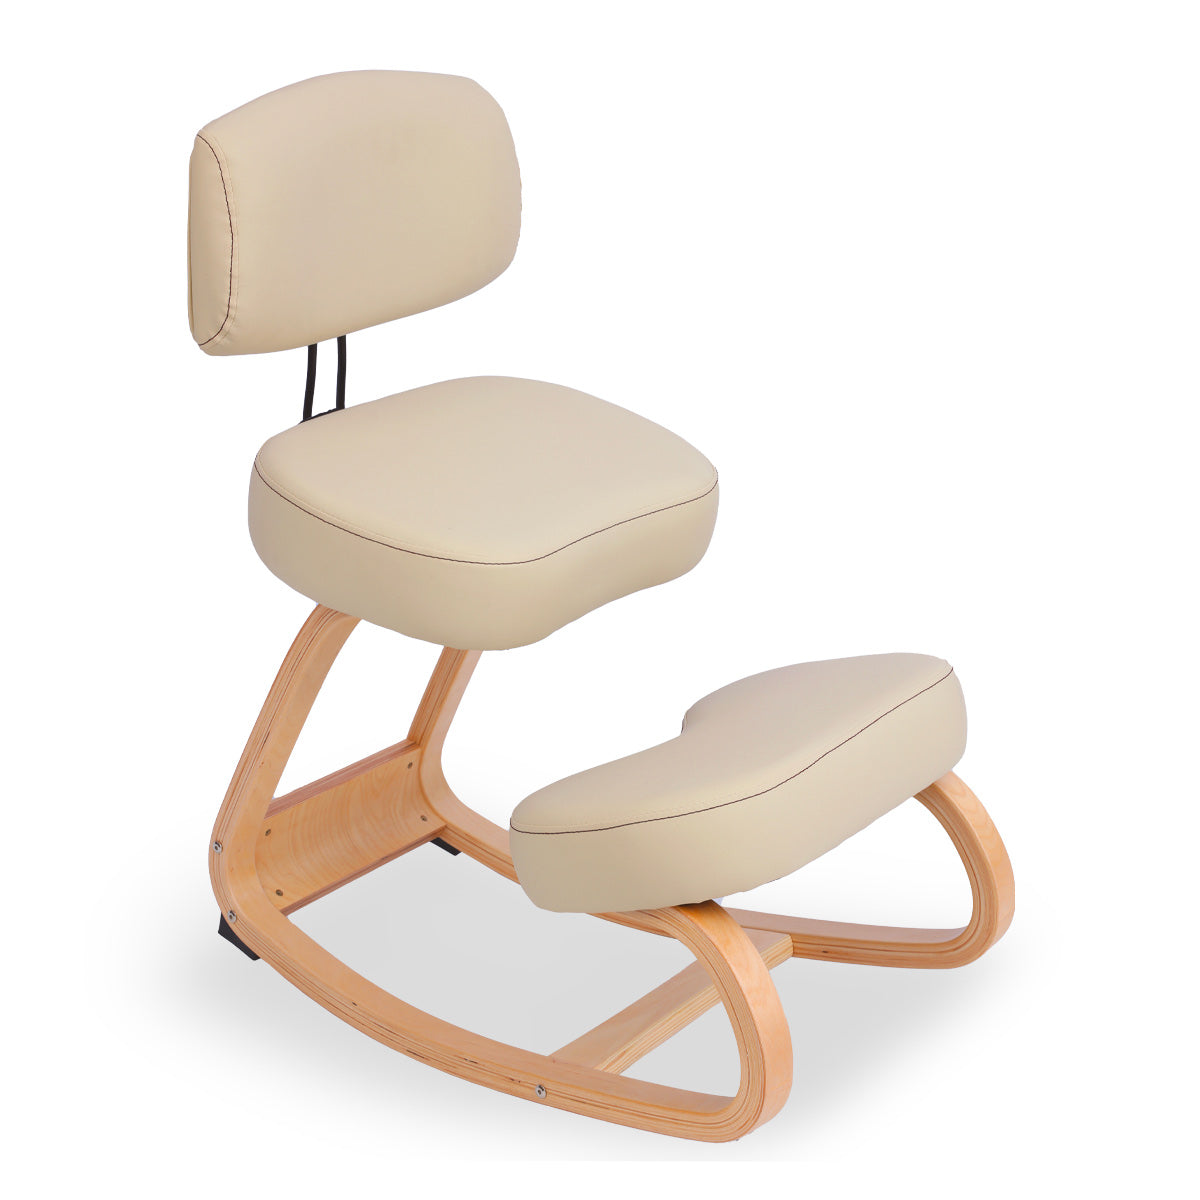 Tabouret ergonomique siège assis genoux en bois bureau Balancewood - Noir